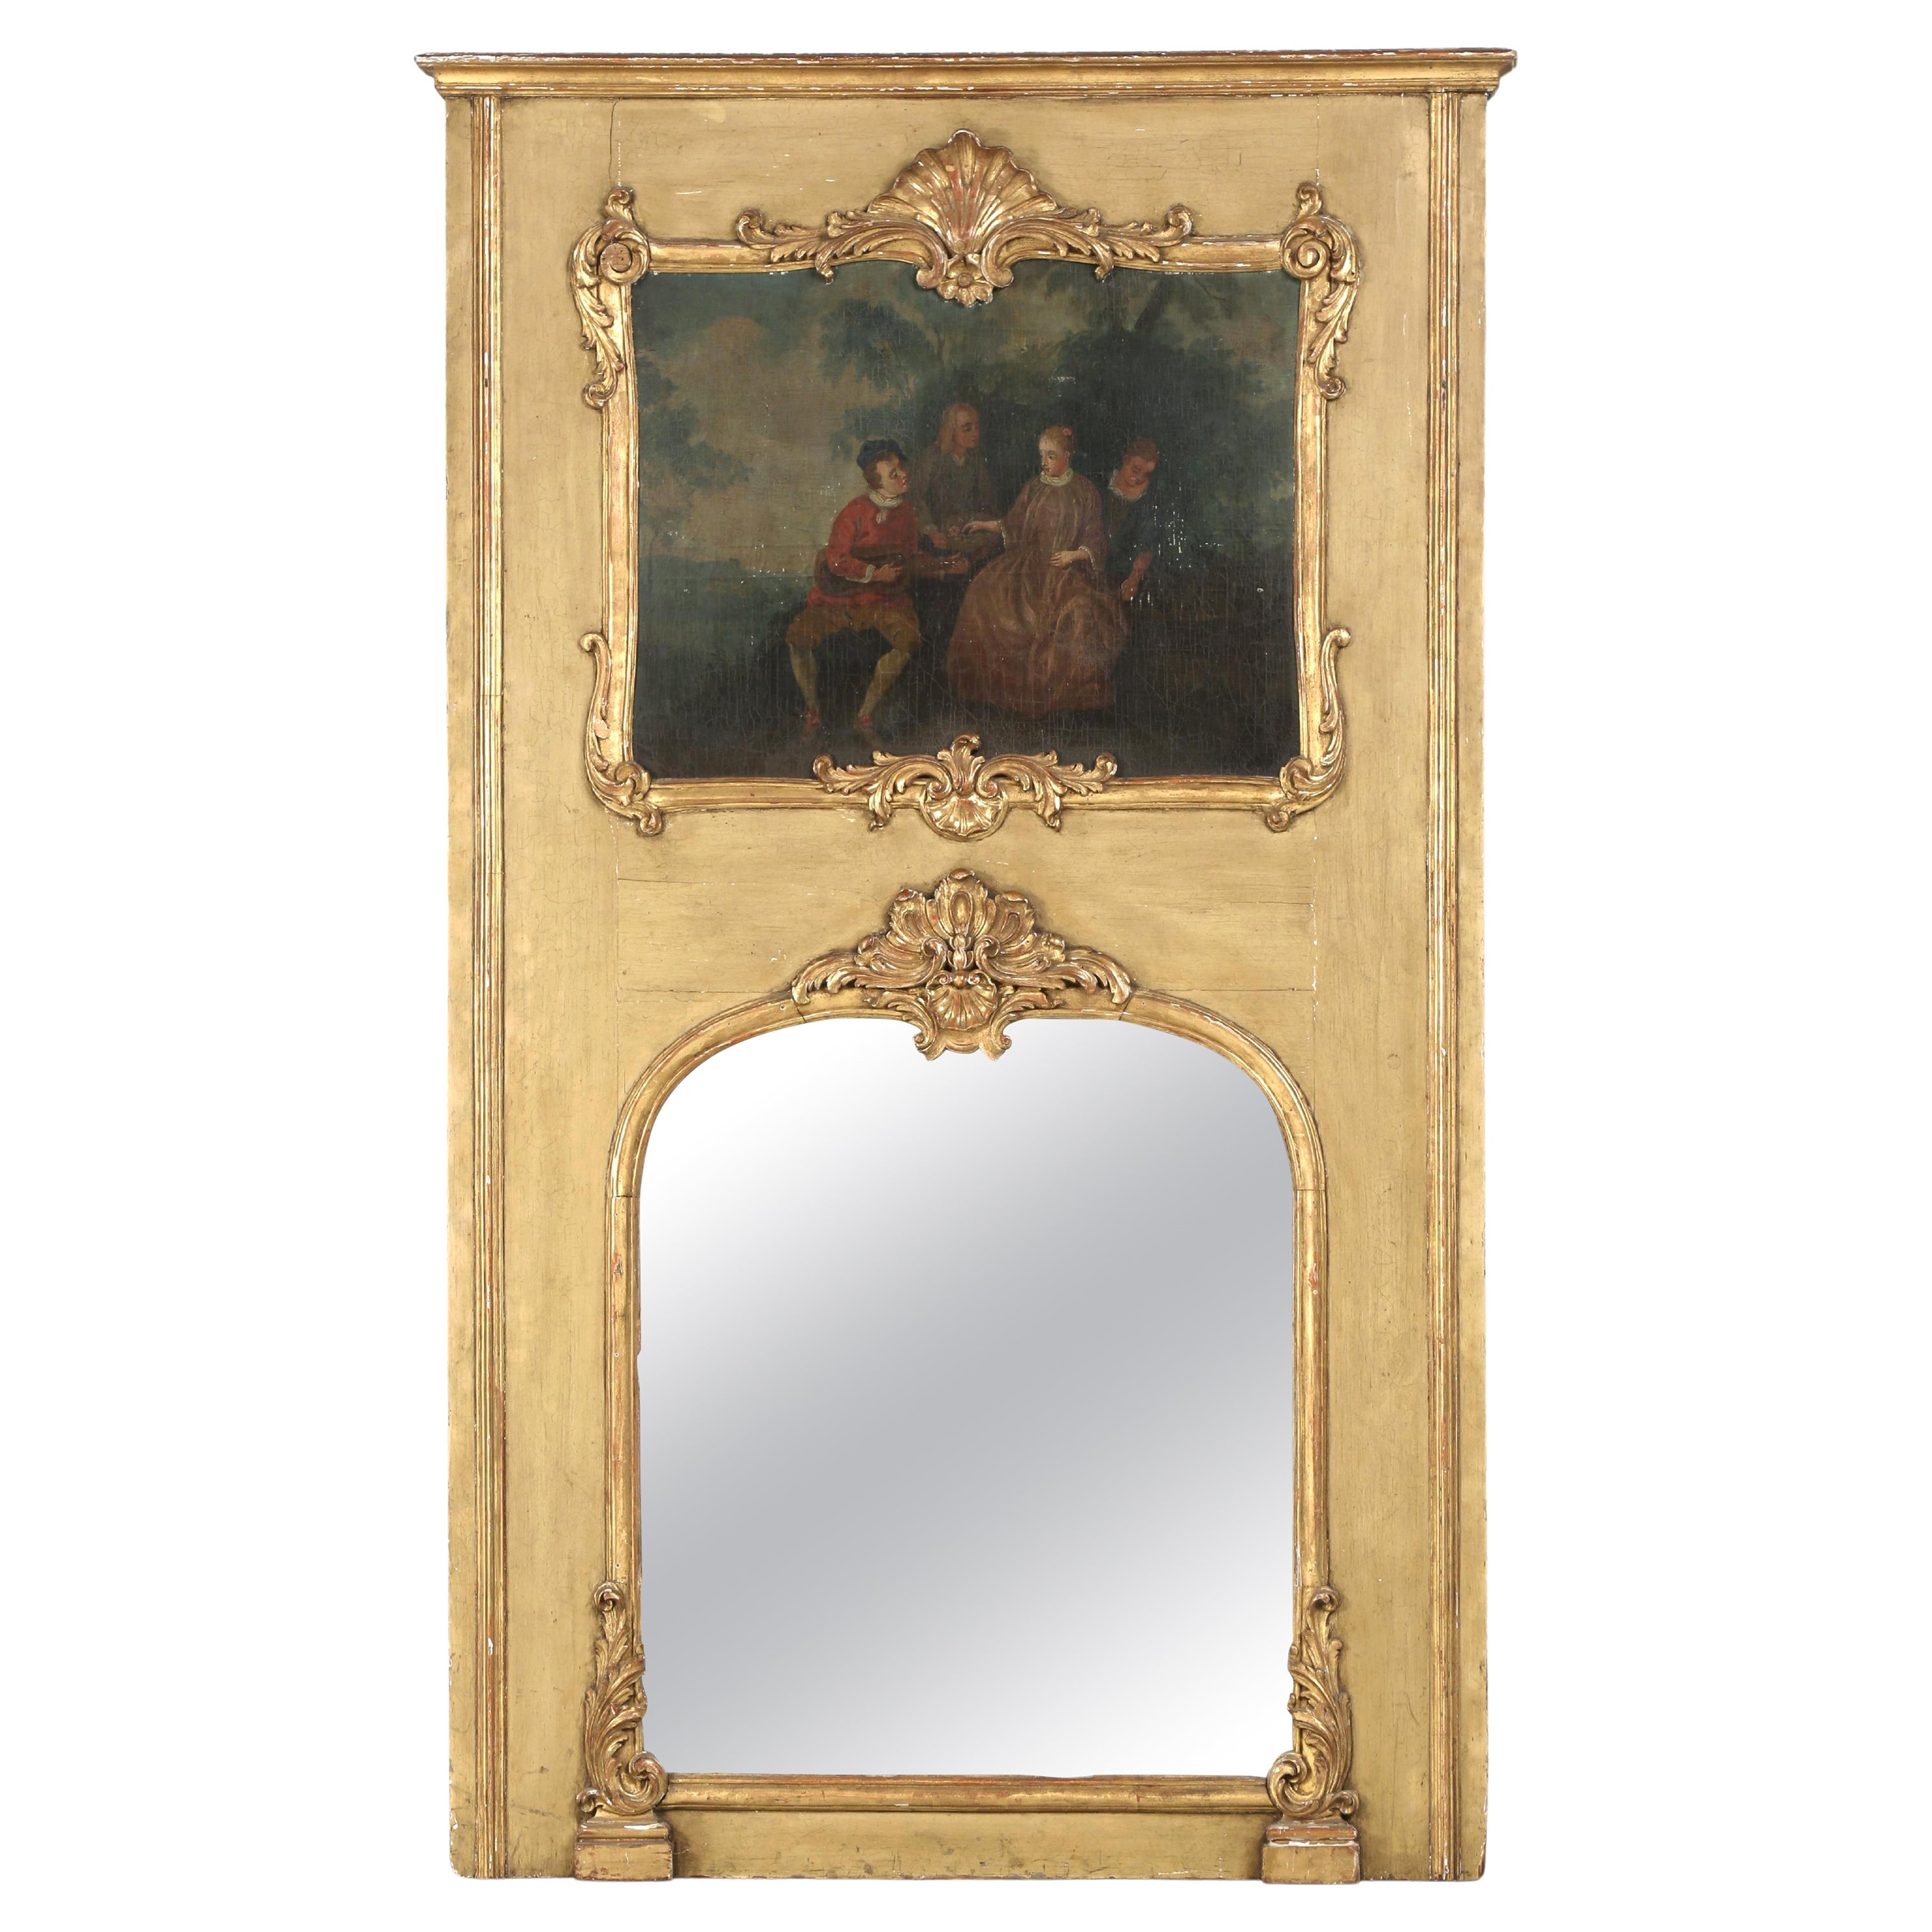 Antique French Trumeau Mirror Vollständig original und unrestauriert c1770-1790